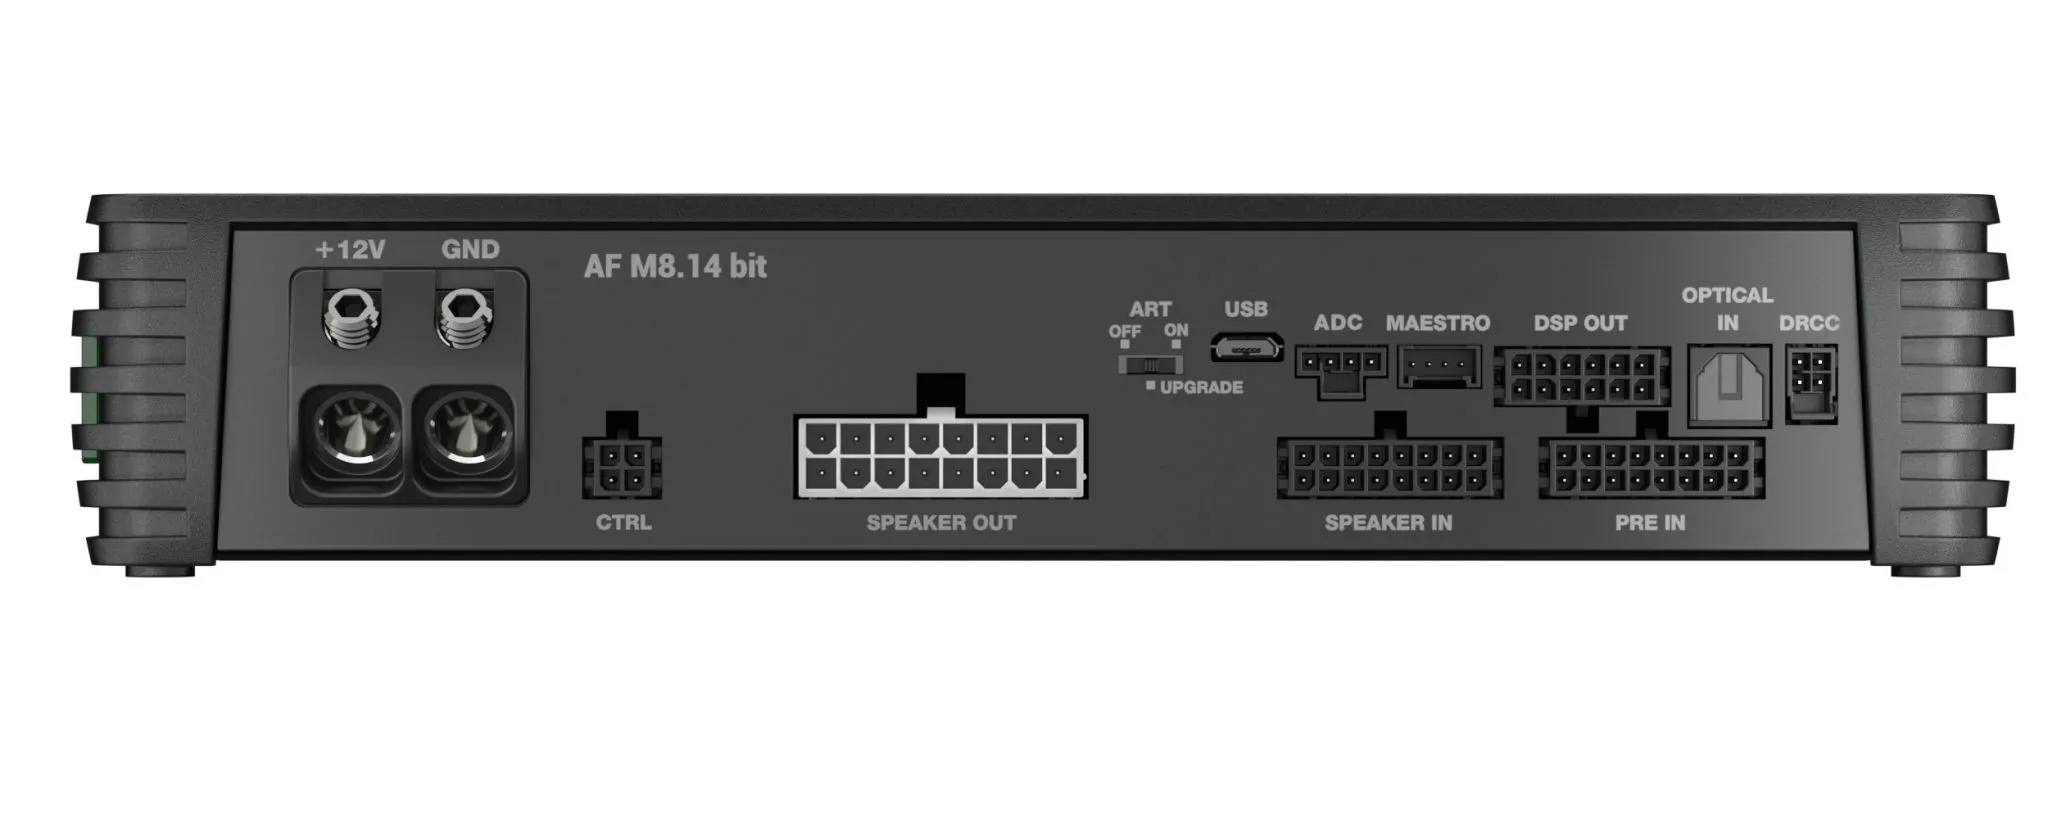 Audison AF M8.14 bit DSP Amplifier | 1120 W | 14 CH DSP + 8 x 140 W @ 2 ohm | D-class Fully Bridgeable